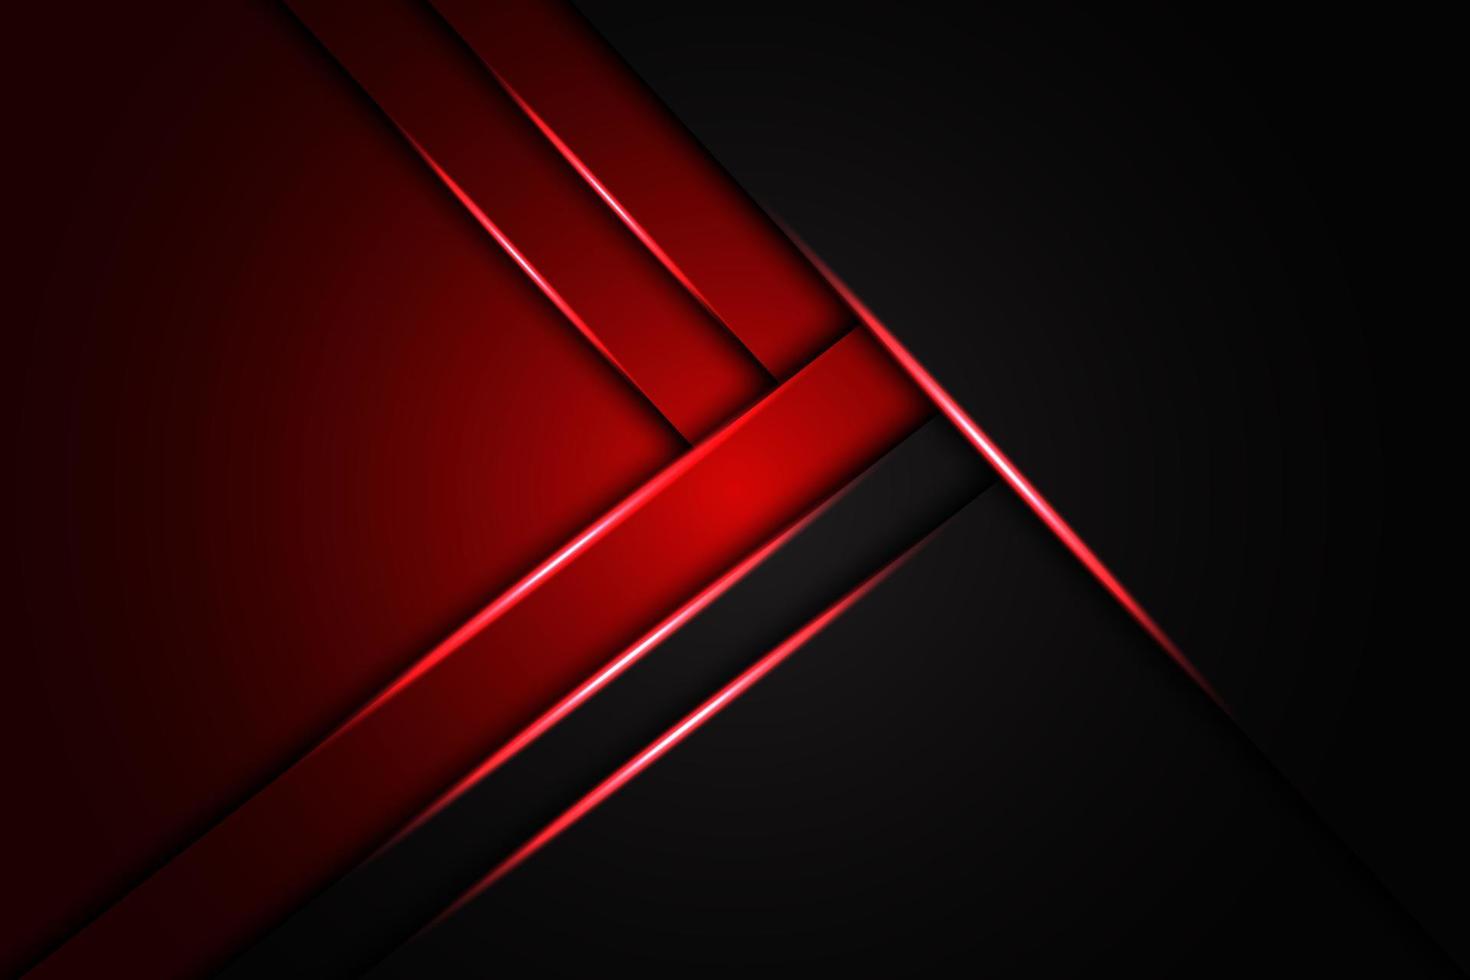 luz vermelha abstrata na textura metálica preta com design de texto simples fundo futurista de luxo moderno vetor eps10